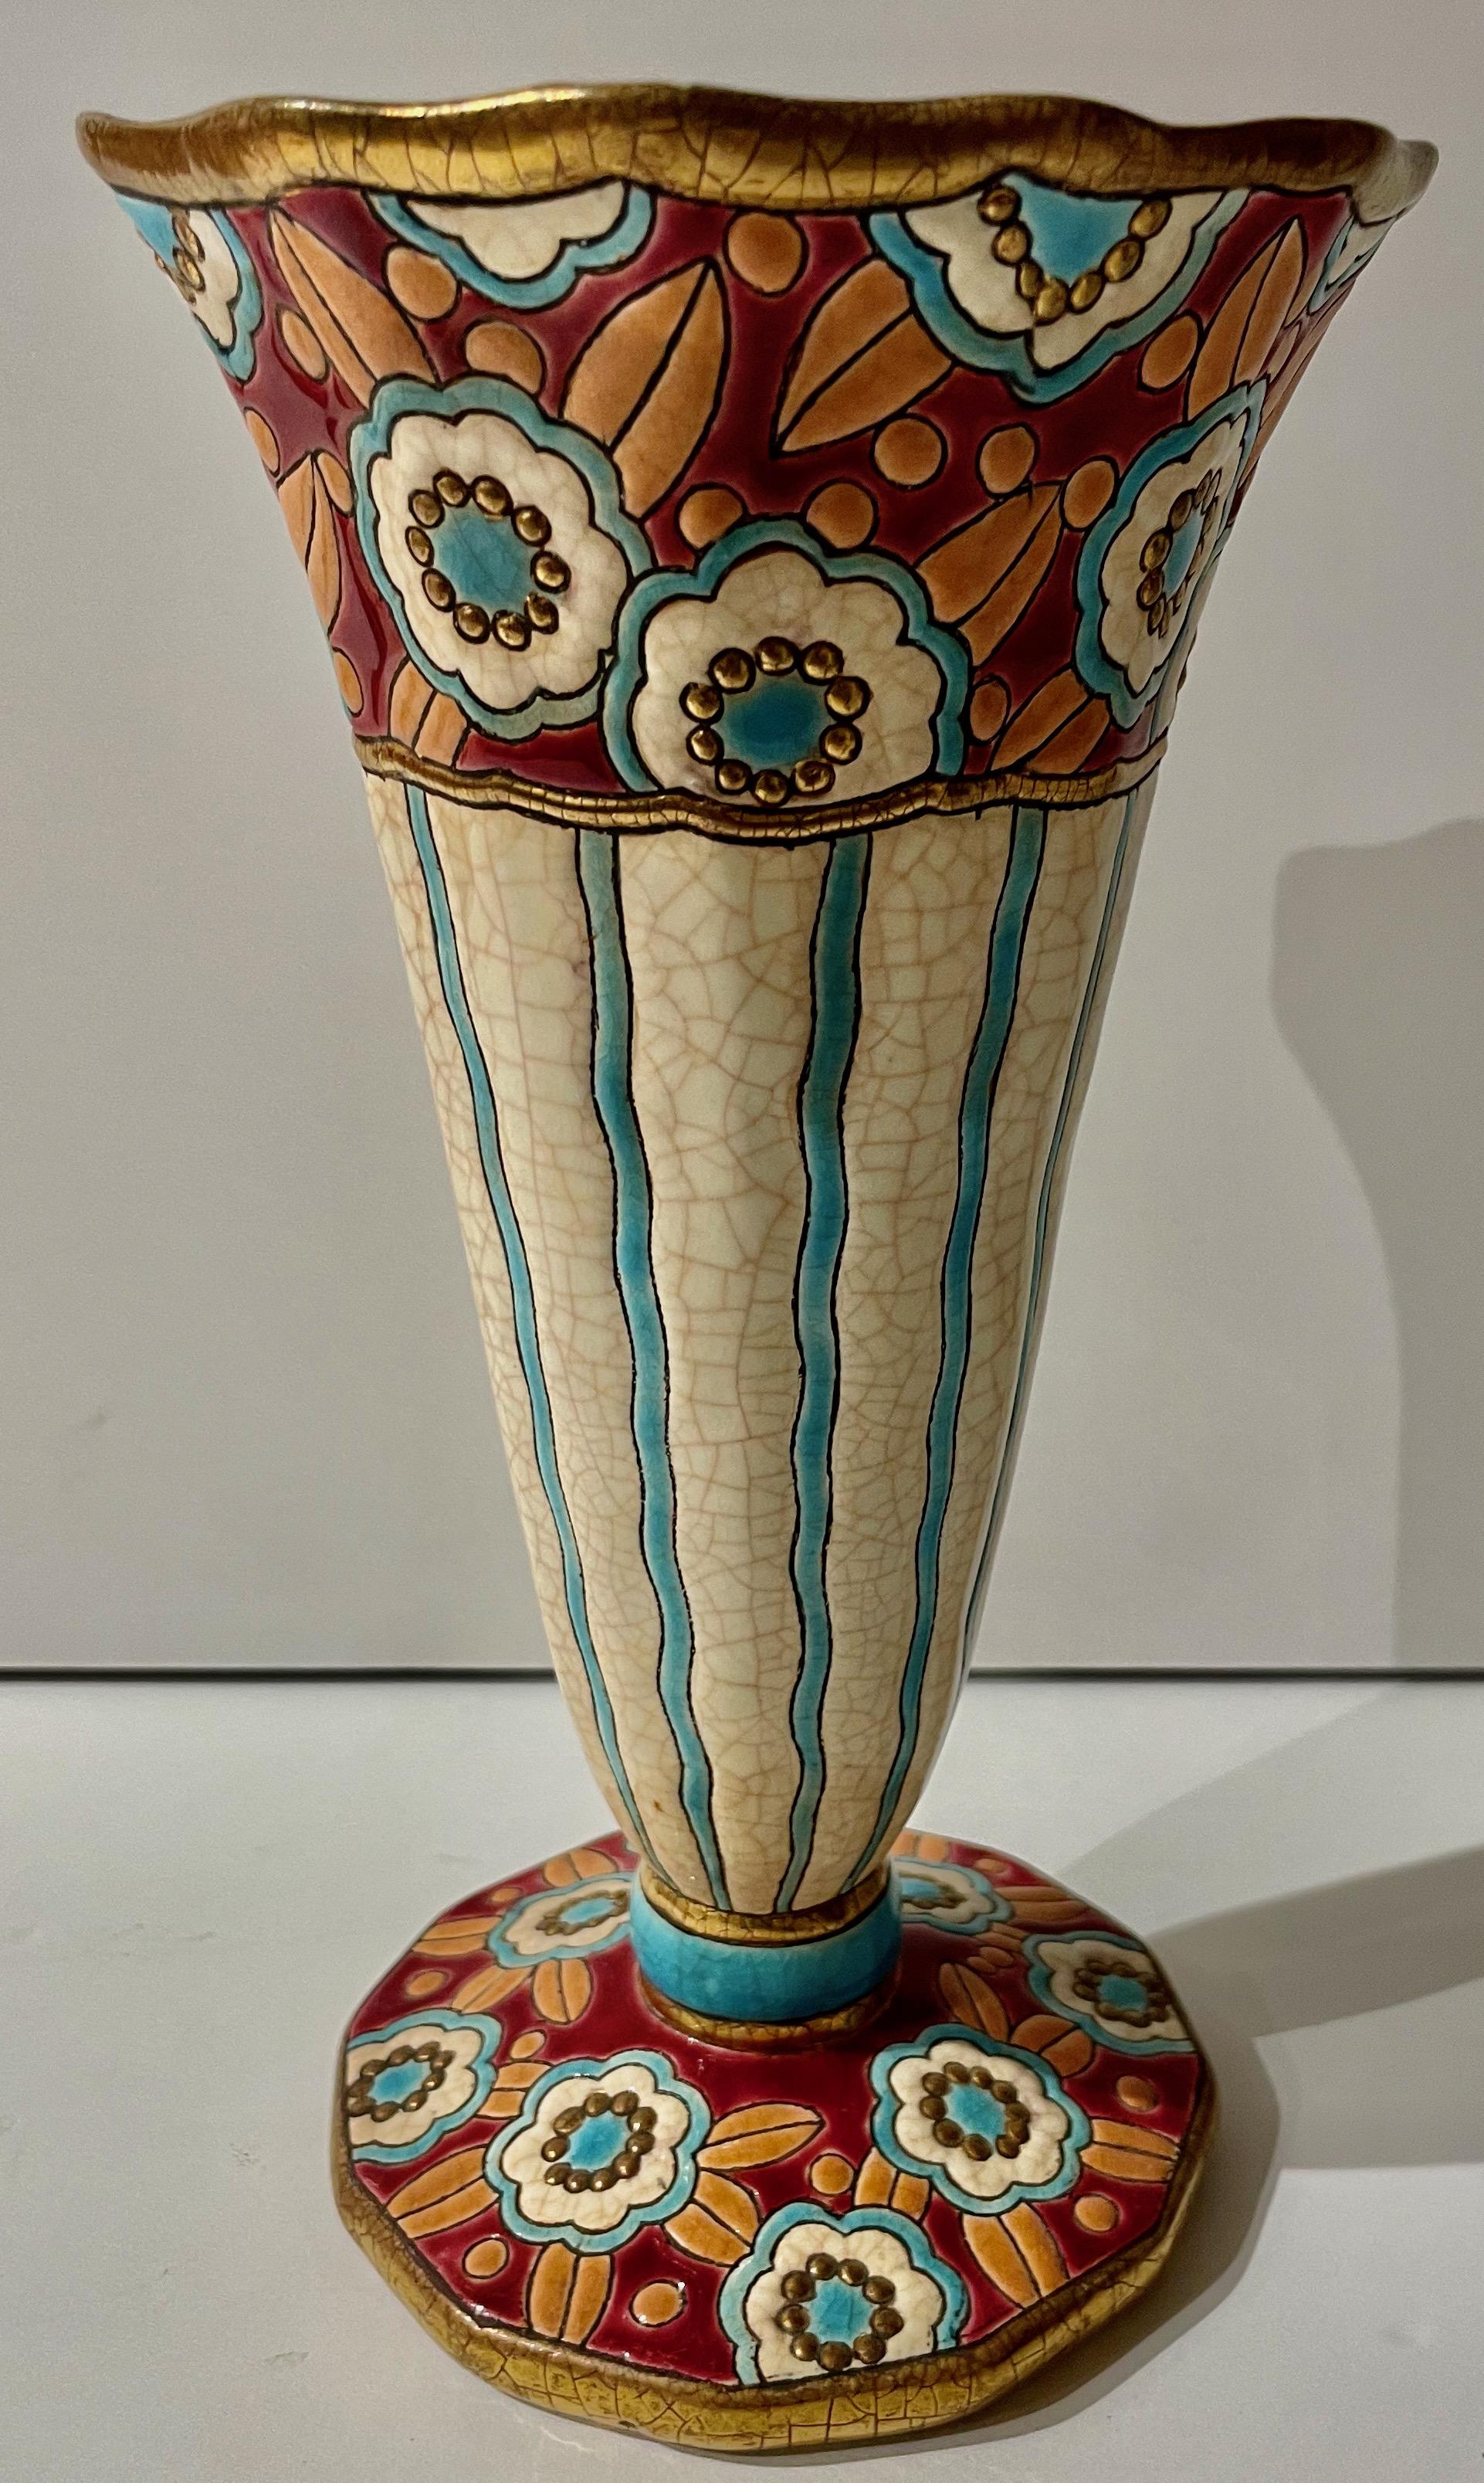 Vase en céramique cloisonnée Art déco français Longwy. Des couleurs étonnantes avec une base facettée avec des fleurs bleues, bordeaux et orange entrecroisées dans le design du vase. Les détails dorés autour de la base et du sommet contribuent à